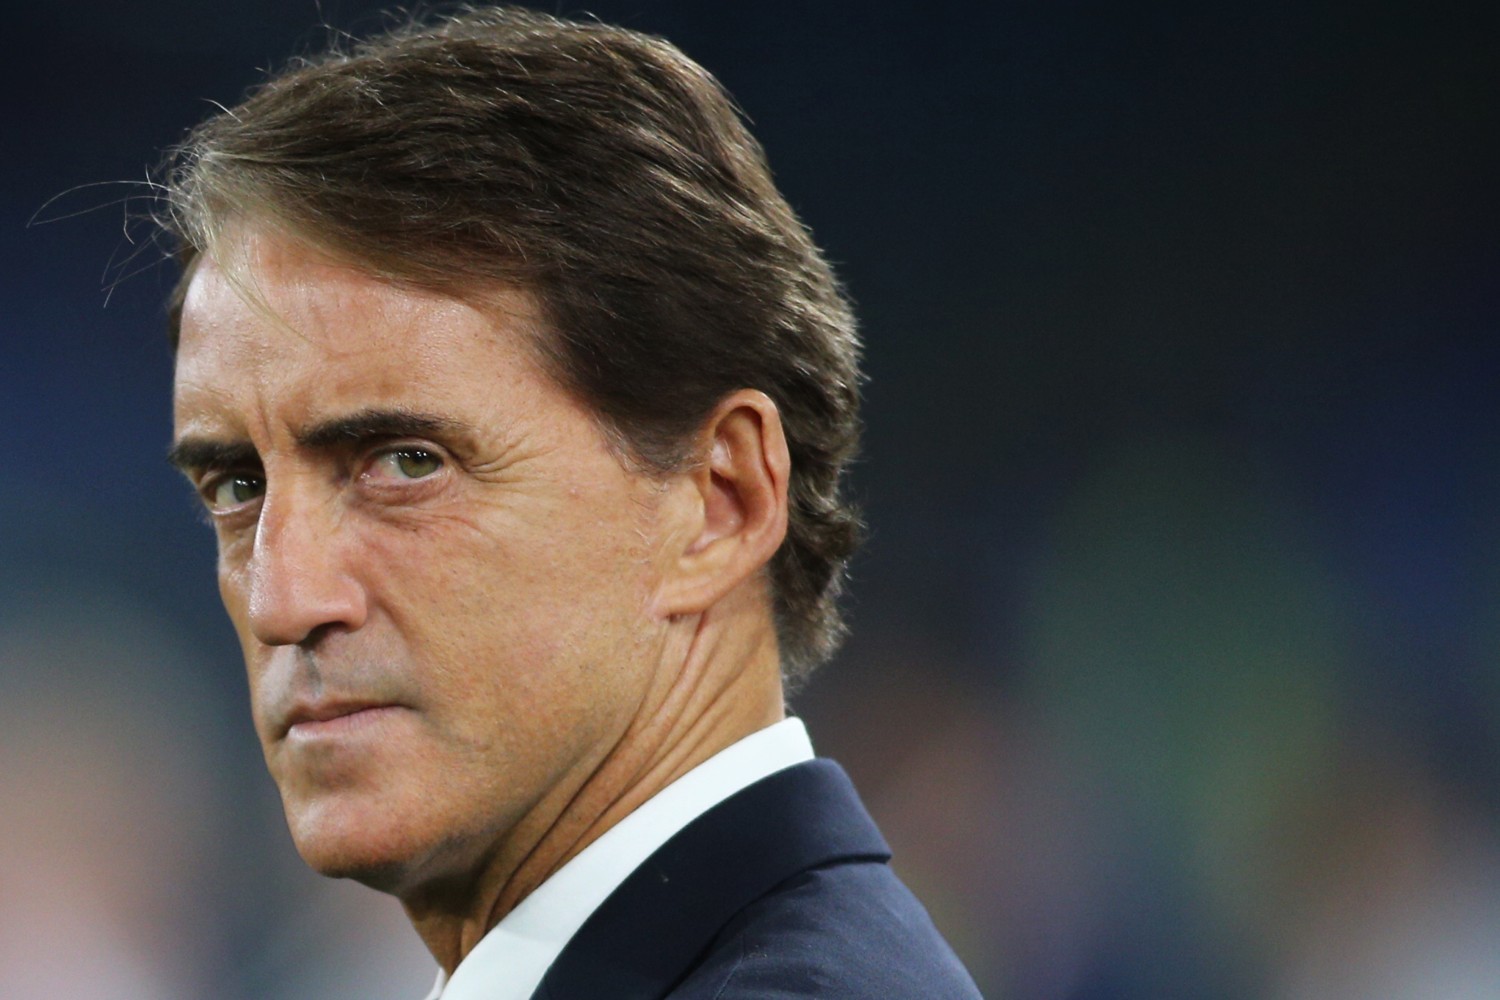 EURO 2020: Reprezentacja Włoch wciąż niepokonana. Podopieczni Manciniego nowymi rekordzistami w liczbie minut bez straty gola na szczeblu międzynarodowym